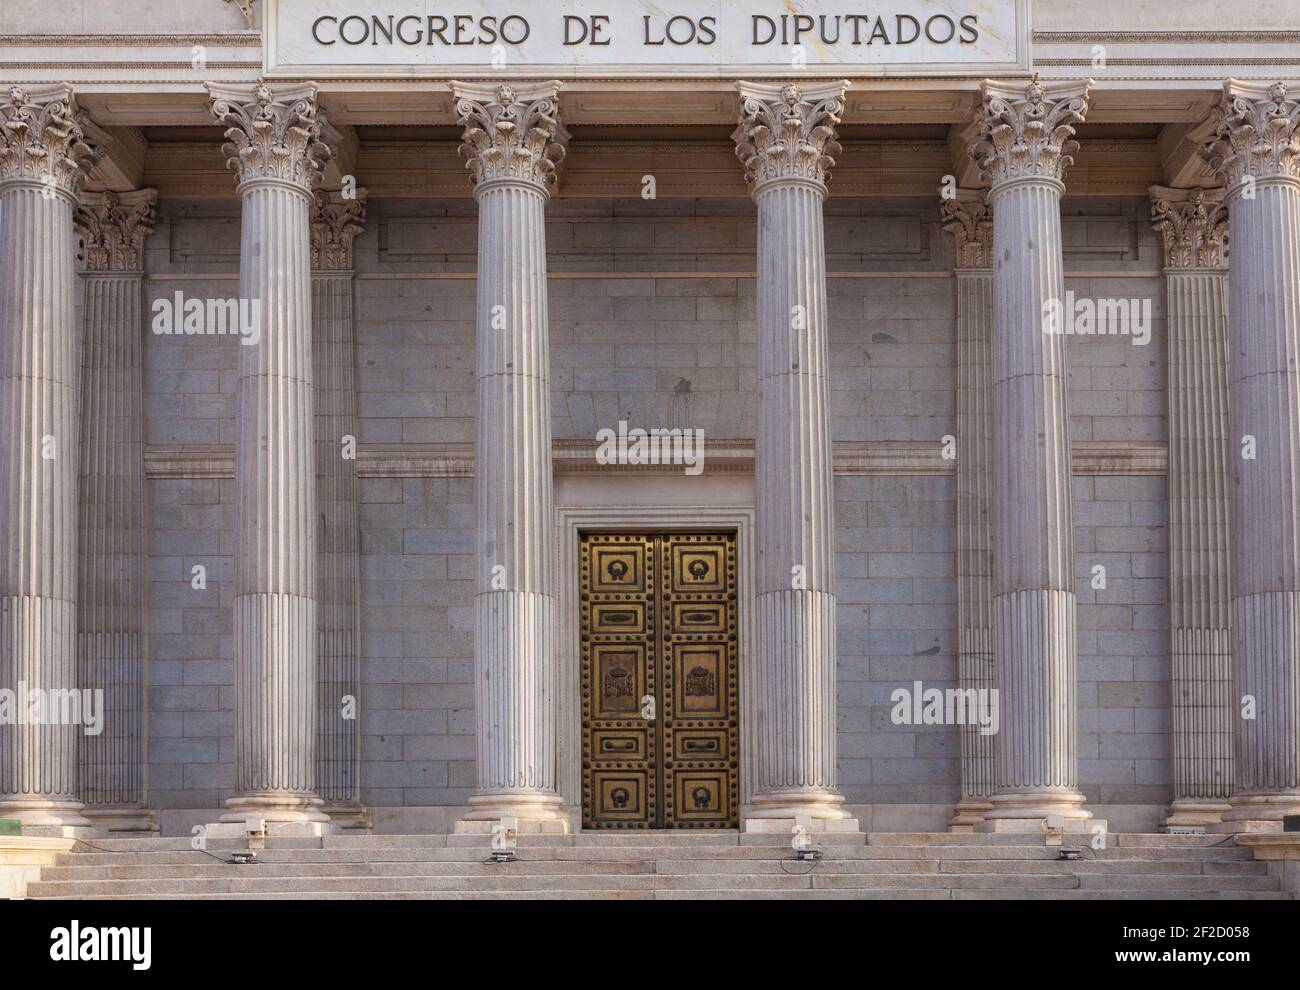 Congrès espagnol des députés. Colonnes. Madrid, Espagne Banque D'Images